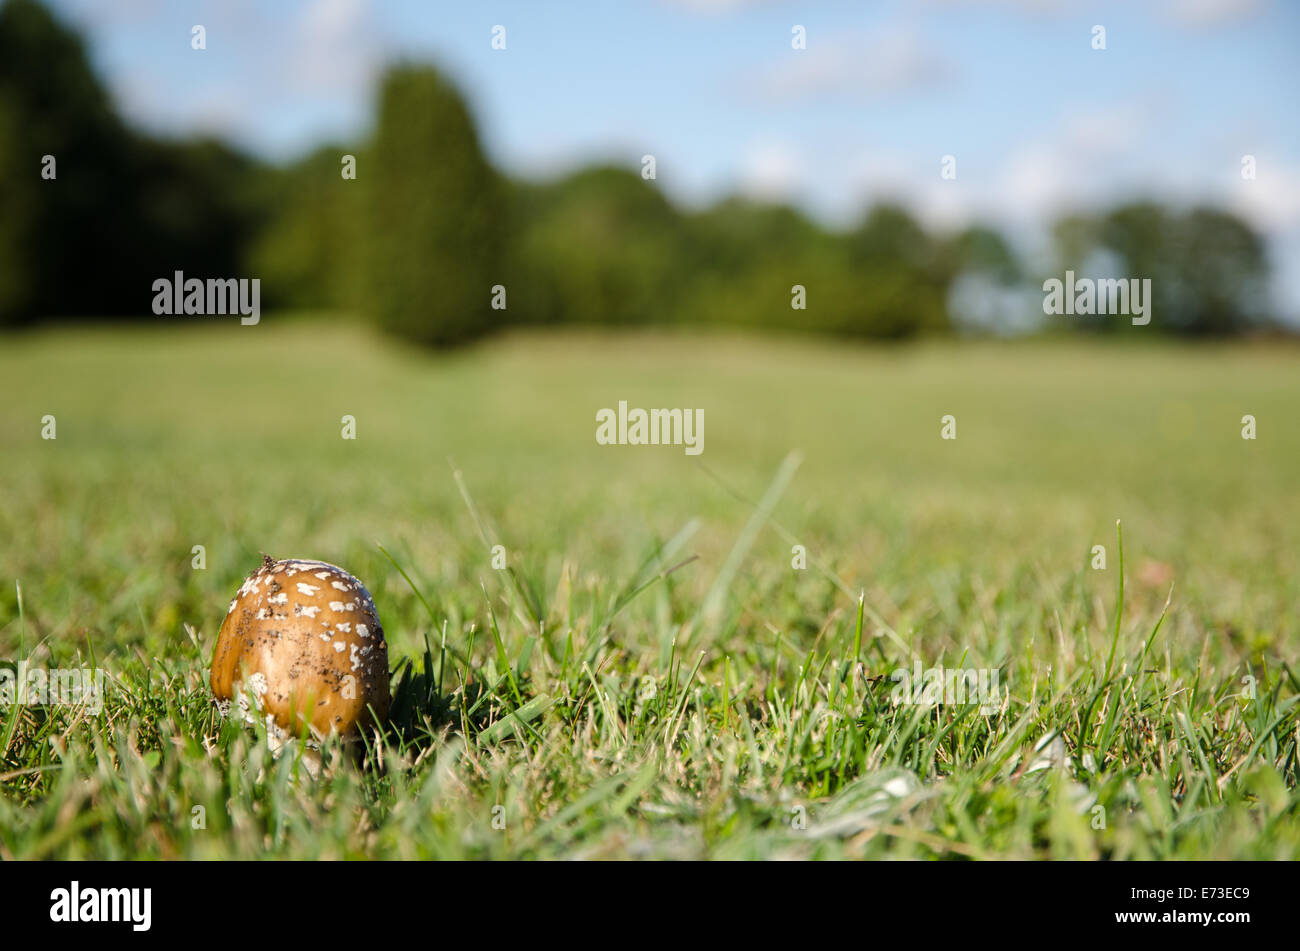 Gros plan du champignon brun tacheté dans un paysage ouvert avec de l'herbe verte Banque D'Images